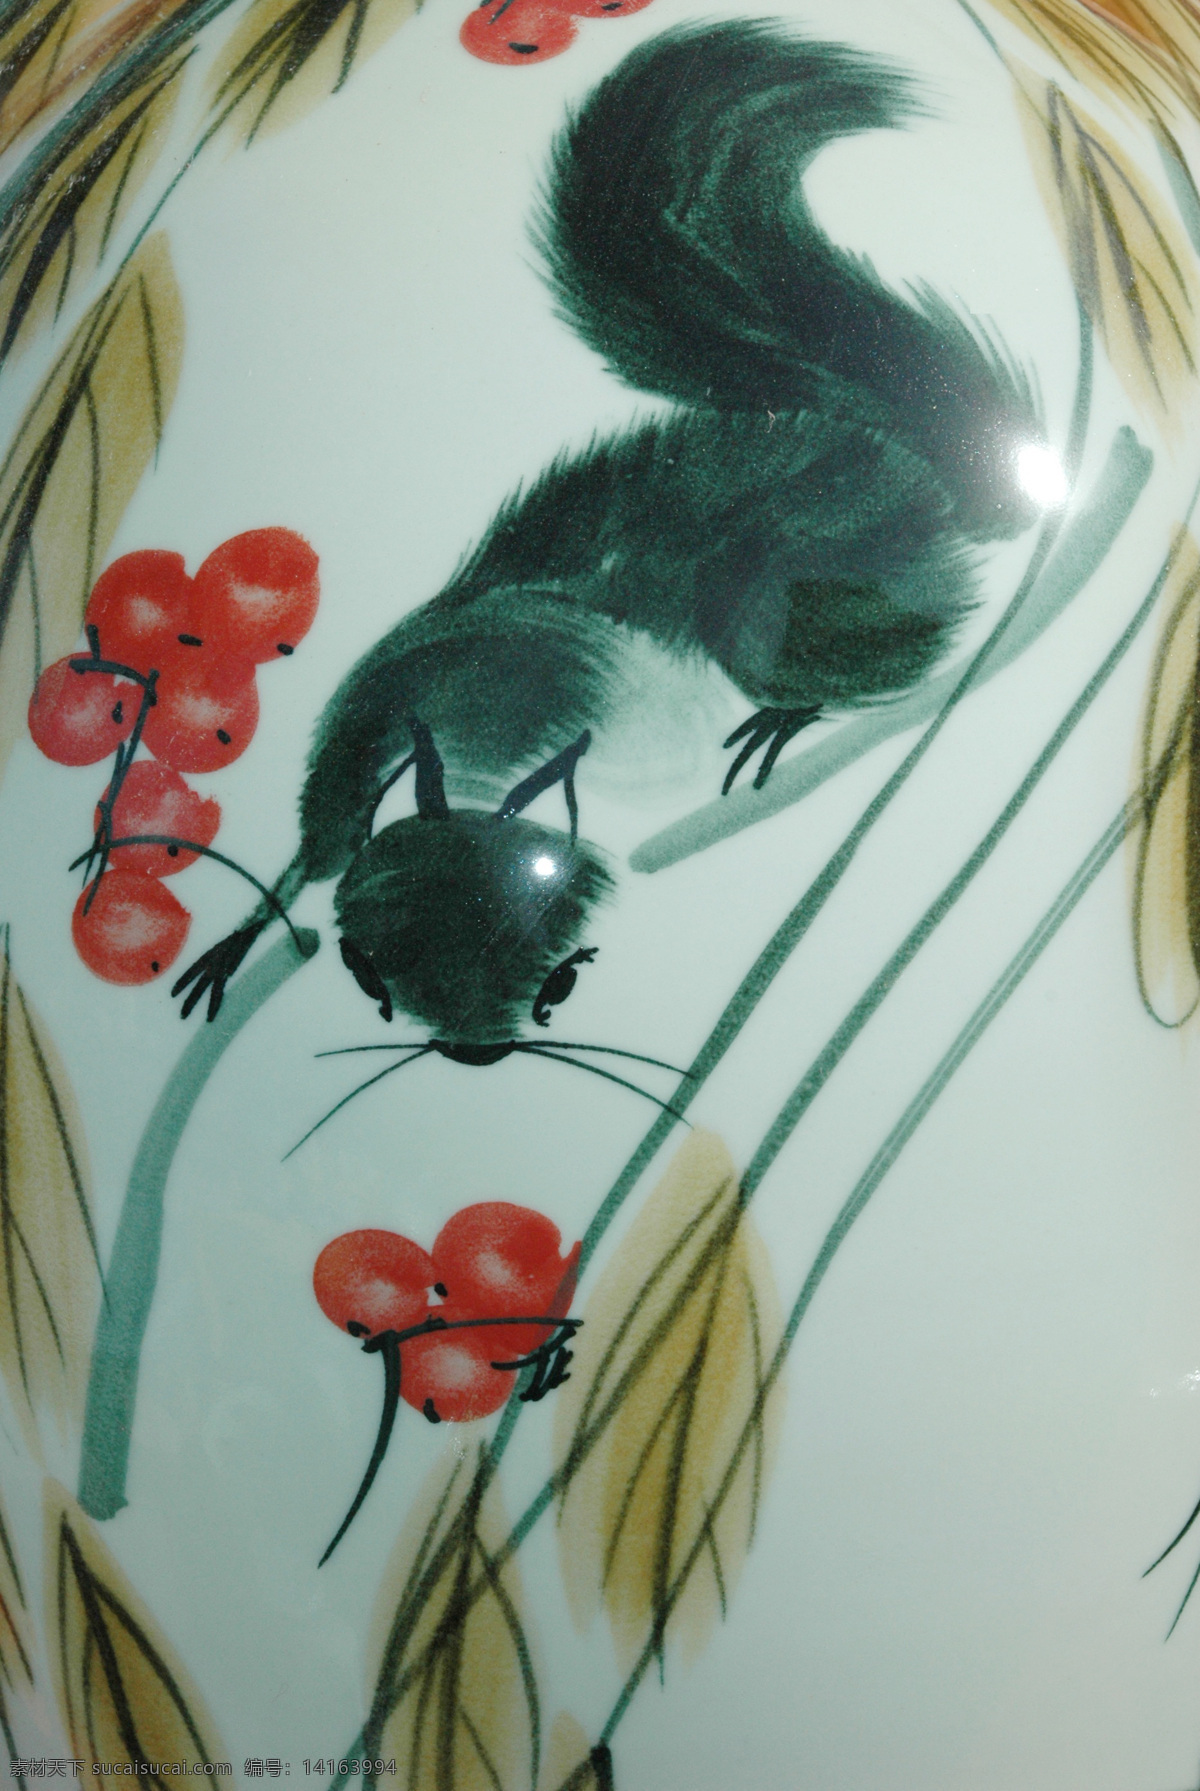 手绘 松鼠 素材图片 国画 油画 插画 装饰画 无框画 底纹背景 彩绘 素描 中国风 书画文字 文化艺术